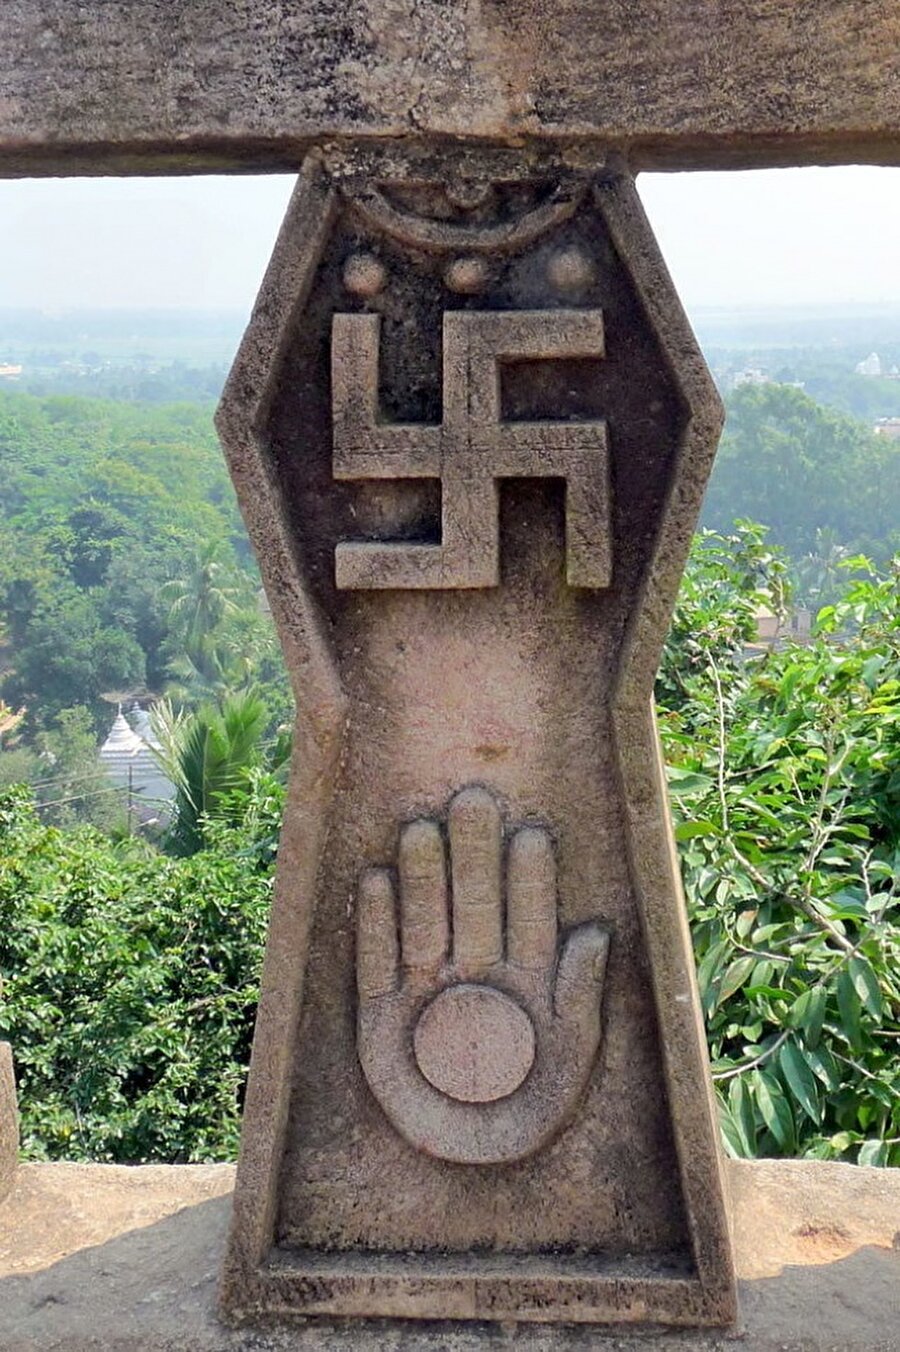 Gamalı haç Hitler’in partisinin amblemi olmadan 3000 yıl önce “iyi şans” anlamına gelen bir sembol olarak kullanılıyordu.

                                    
                                